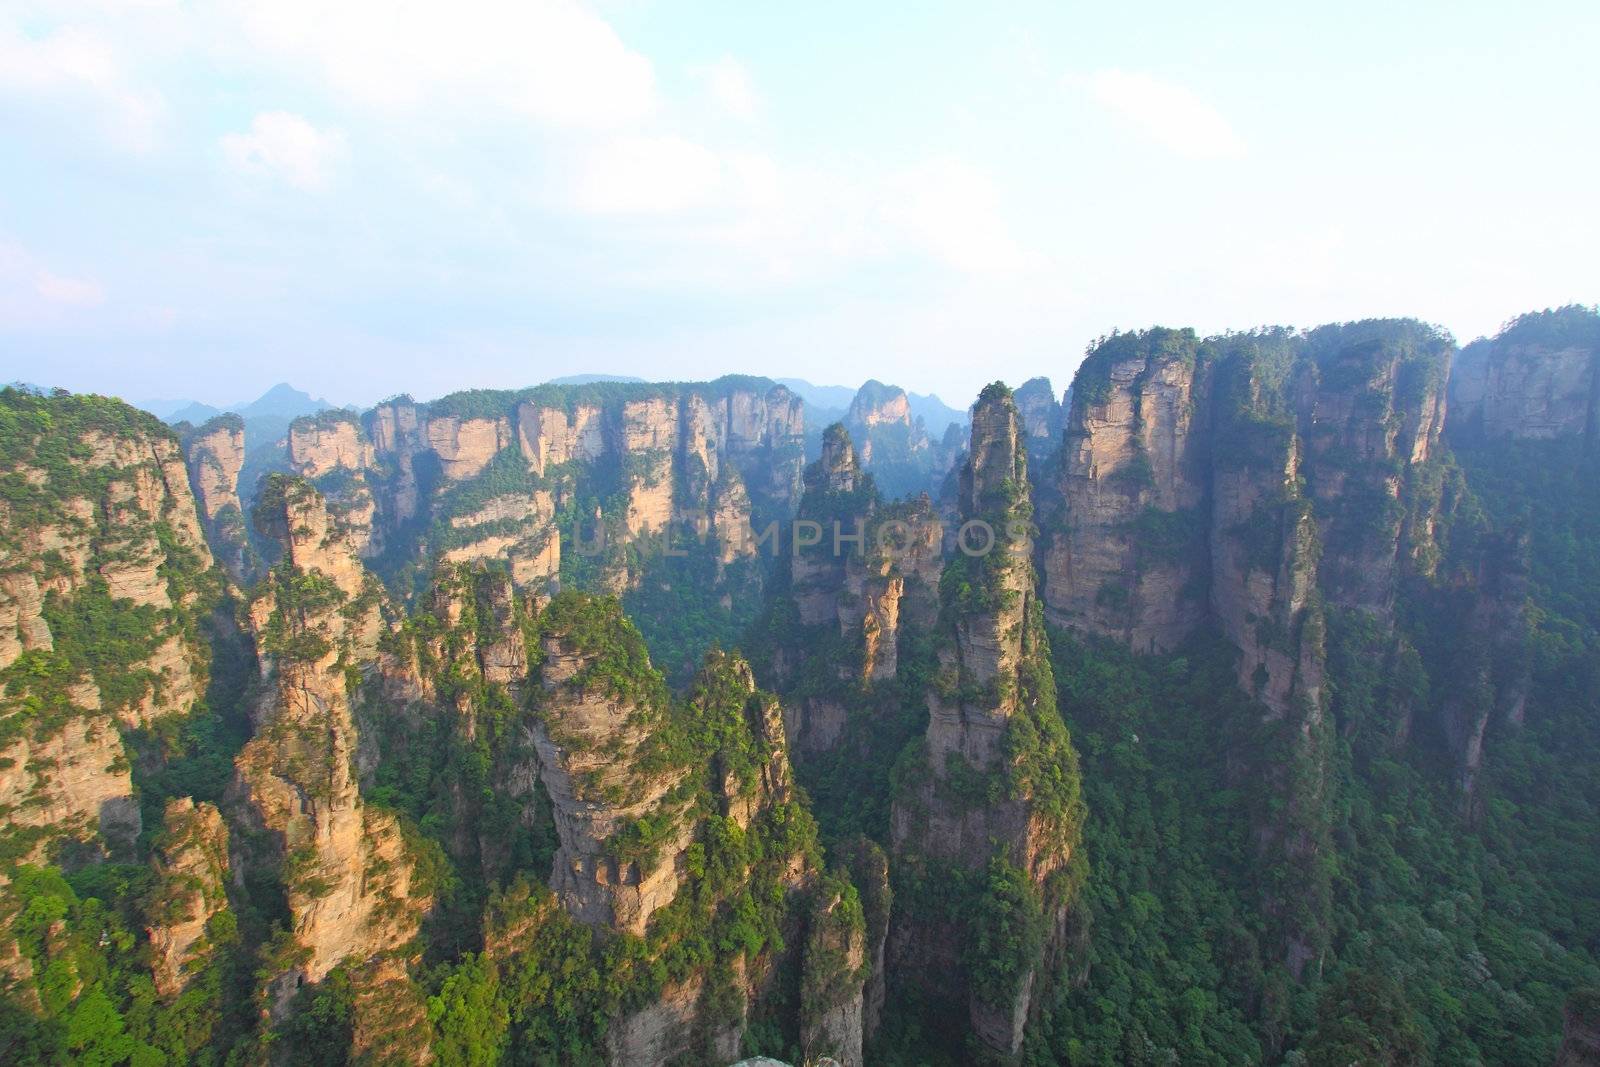 Mountain landscape of Zhangjiajie in China by kawing921